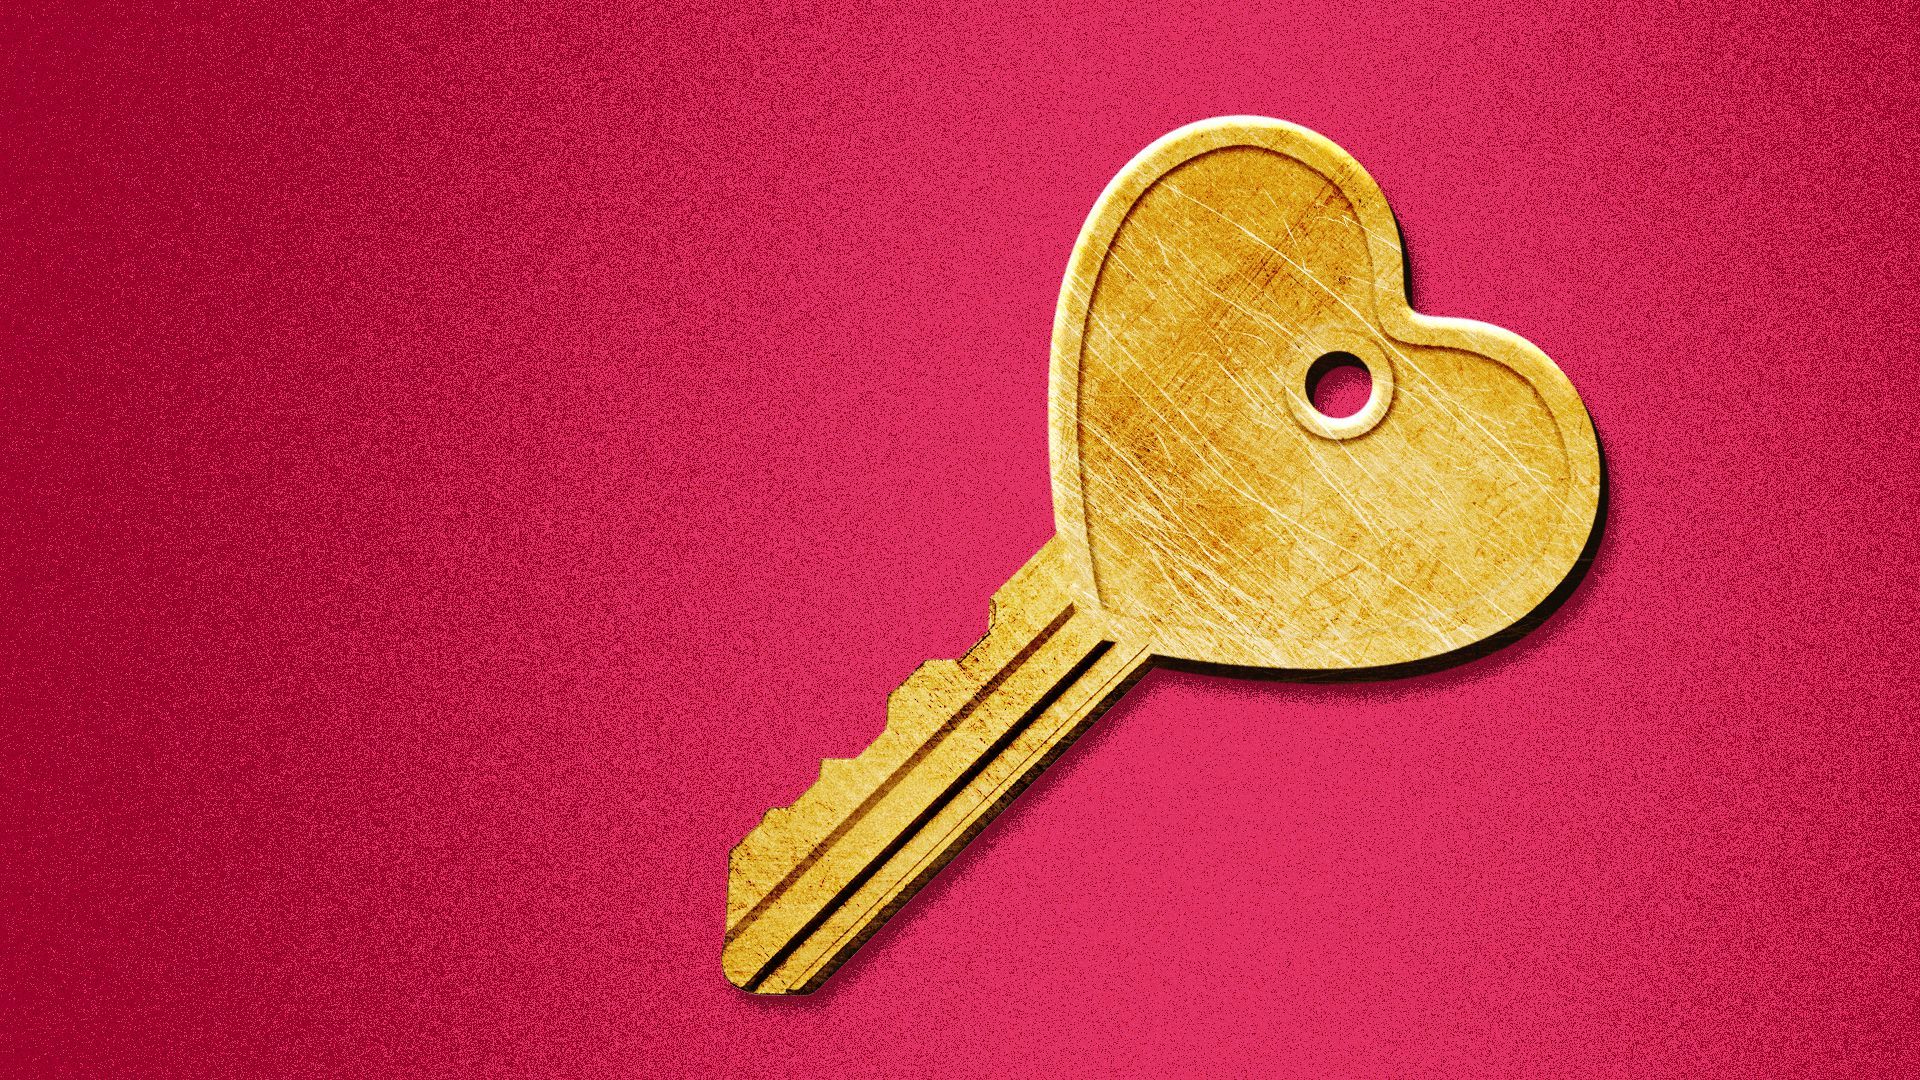 Illustration of a key shaped like a heart.